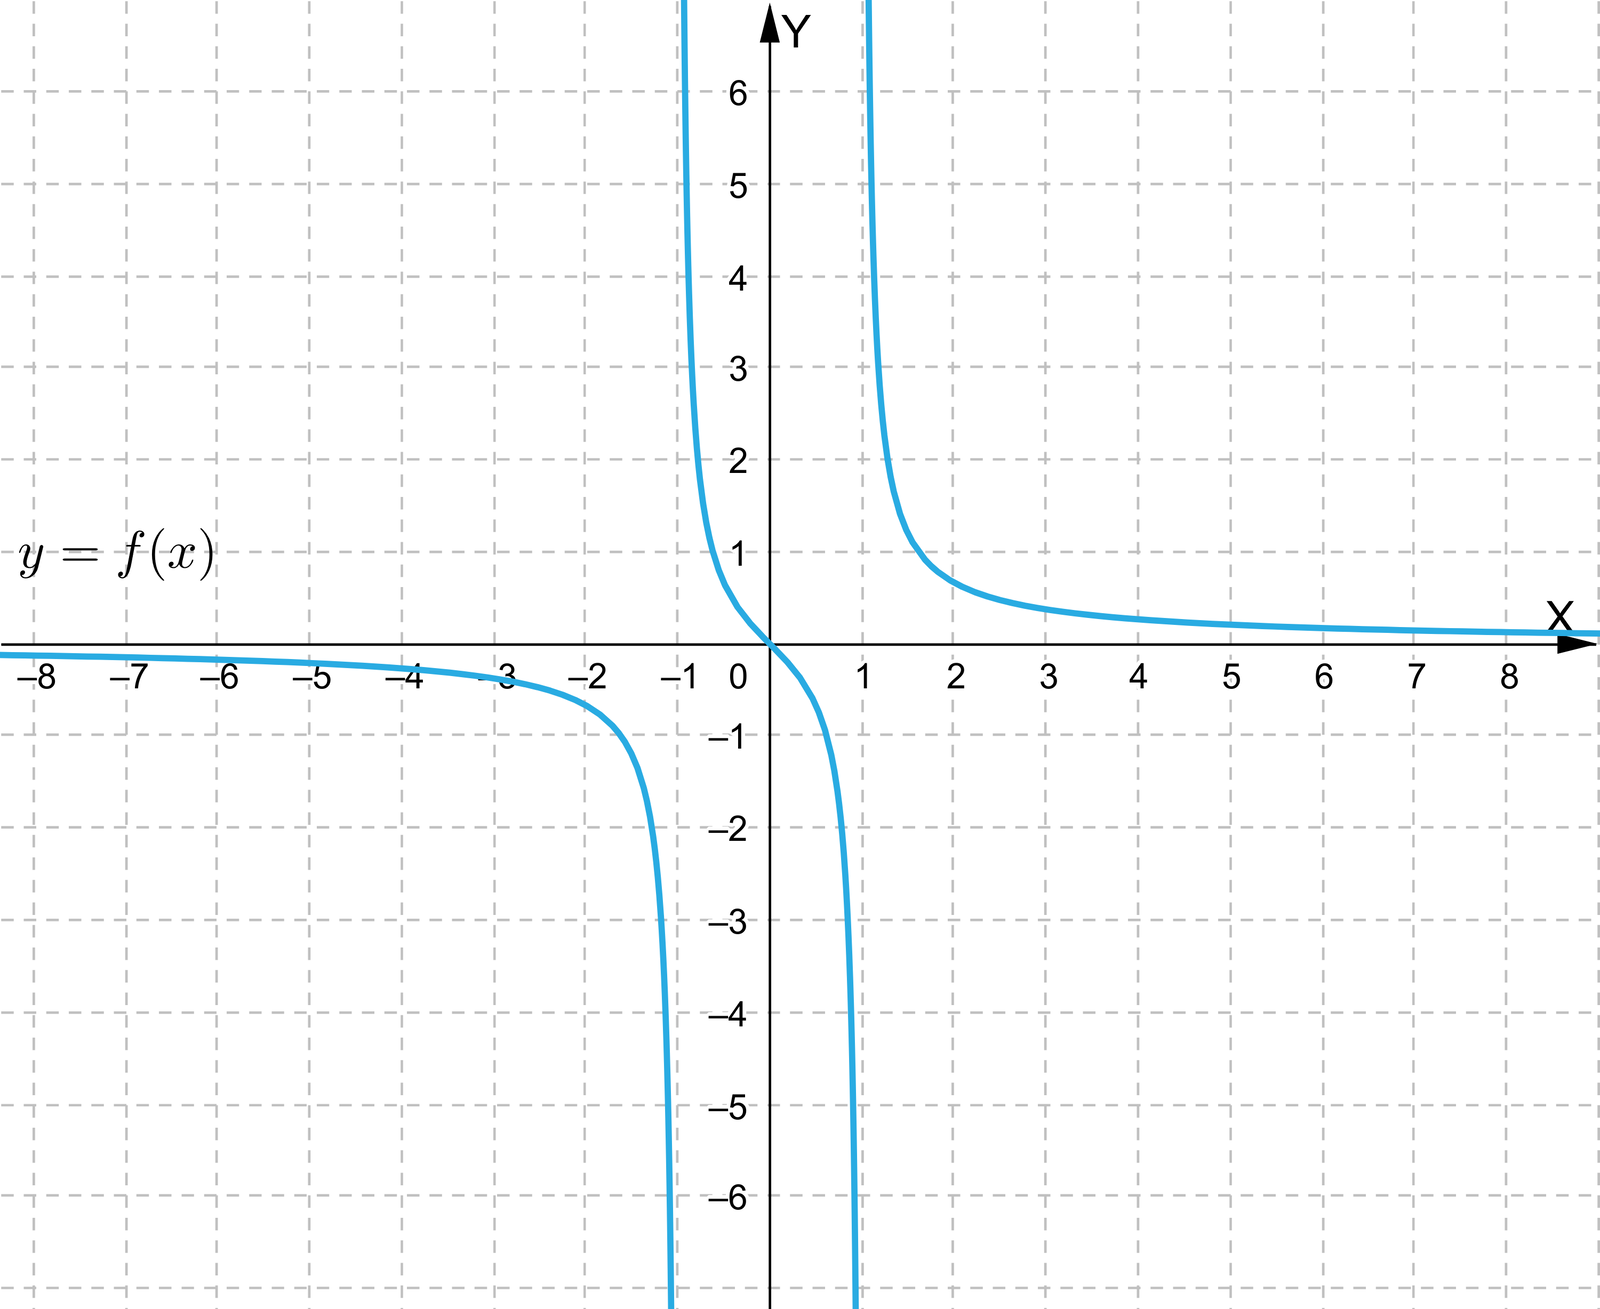  Aplet przedstawia układ współrzędnych z poziomą osią x od minus 8 do 8 i pionową osią y od minus 6 do sześć. W układzie zaznaczono pierwszy wykres, ma on równanie fx=x+12x−4. Wykres ma kształt hiperboli i posiada asymptotę pionową o równaniu x=2. Pierwsza część asymptoty pojawia się w układzie w drugiej ćwiartce i biegnie najpierw nad osią x, następnie przecina ją w punkcie nawias minus jeden średnik zero zamknięcie nawiasu, dalej biegnie po łuku do punktu nawias jeden średnik minus jeden zamknięcie nawiasu i dalej biegnie również po łuku wychodząc poza płaszczyznę układu w  czwartej ćwiartce. Druga część znajduje się w pierwszej ćwiartce układu i przechodzi przez punkty nawias trzy średnik dwa zamknięcie nawiasu i nawias pięć średnik jeden zamknięcie nawiasu. Aplet wyświetla następujące informacje o funkcji: dziedziną tej funkcji nie są liczby rzeczywiste, funkcja ta ma miejsca zerowe oraz wykres tej funkcji ma asymptotę pionową.   Drugi wykres ma równanie:  fx=11+x2. Wykres pojawia się w drugiej ćwiartce układu i biegnie niemal poziomo nad osią x, następnie biegnie po łuku do punktu nawias zero średnik jeden zamknięcie nawiasu i dalej biegnie po łuku i wychodzi poza płaszczyznę układu w pierwszej ćwiartce tuż nad osią x.  Aplet wyświetla następujące informacje o funkcji: dziedziną tej funkcji są liczby rzeczywiste, funkcja ta nie ma miejsc zerowych oraz wykres tej funkcji nie ma asymptoty pionowej.  Trzeci wykres ma równanie: fx=x2+3x+2x+2. Wykres ma kształt ukośnej prostej, która przechodzi prze punkty nawias minus trzy średnik minus dwa zamknięcie nawiasu i nawias jeden średnik zero zamknięcie nawiasu. Na wykresie niezamalowaną kropką zaznaczono punkt o współrzędnych nawias minus dwa średnik minus jeden zamknięcie nawiasu. Aplet wyświetla następujące informacje o funkcji: dziedziną tej funkcji nie są liczby rzeczywiste, funkcja ta ma miejsca zerowe oraz wykres tej funkcji nie ma asymptoty pionowej.